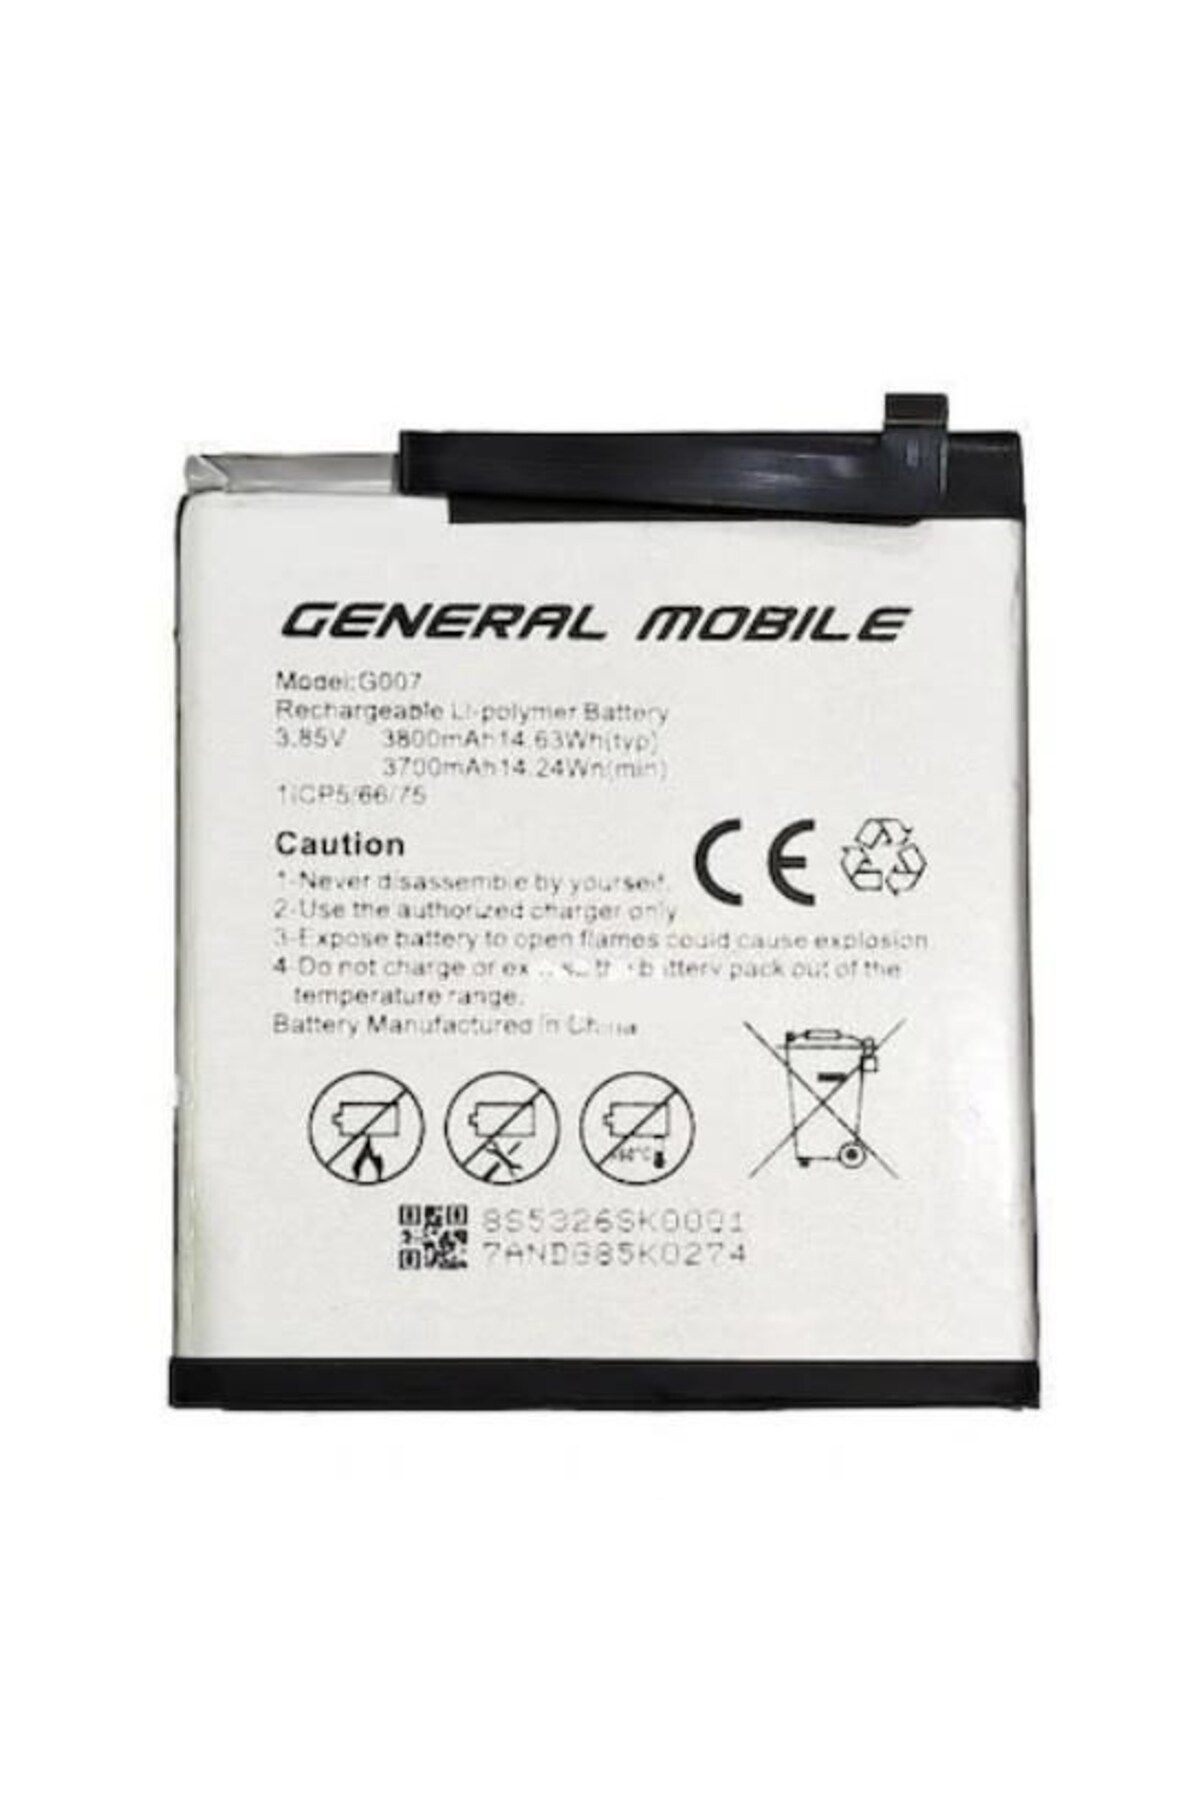 General Mobile General Mobil Gm9 Pro Batarya Pil